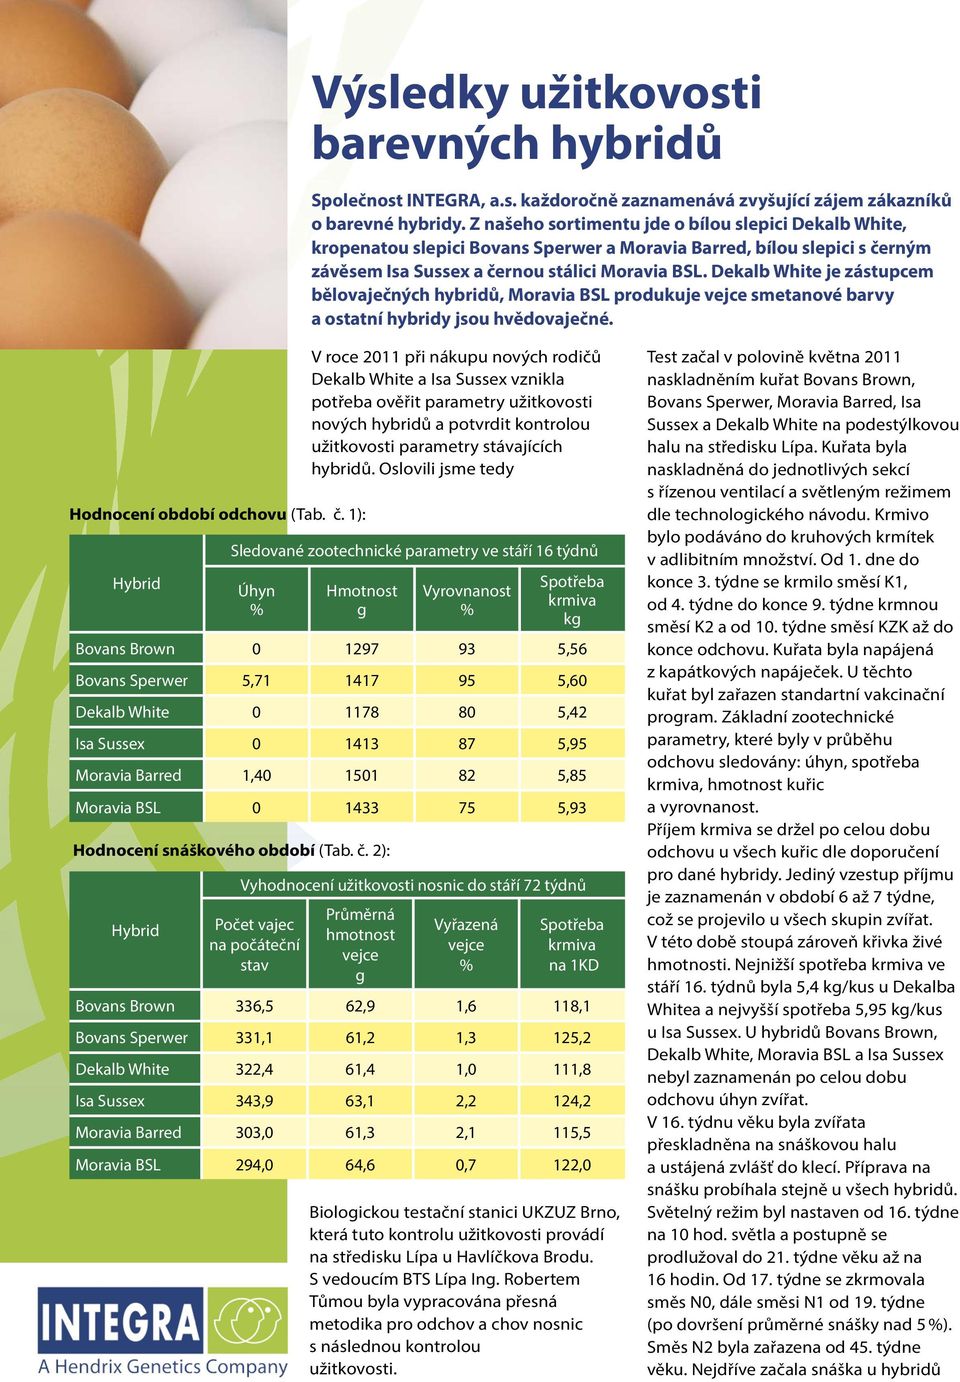 Dekalb White je zástupcem bělovaječných hybridů, Moravia BSL produkuje vejce smetanové barvy a ostatní hybridy jsou hvědovaječné. Hodnocení období odchovu (Tab. č.